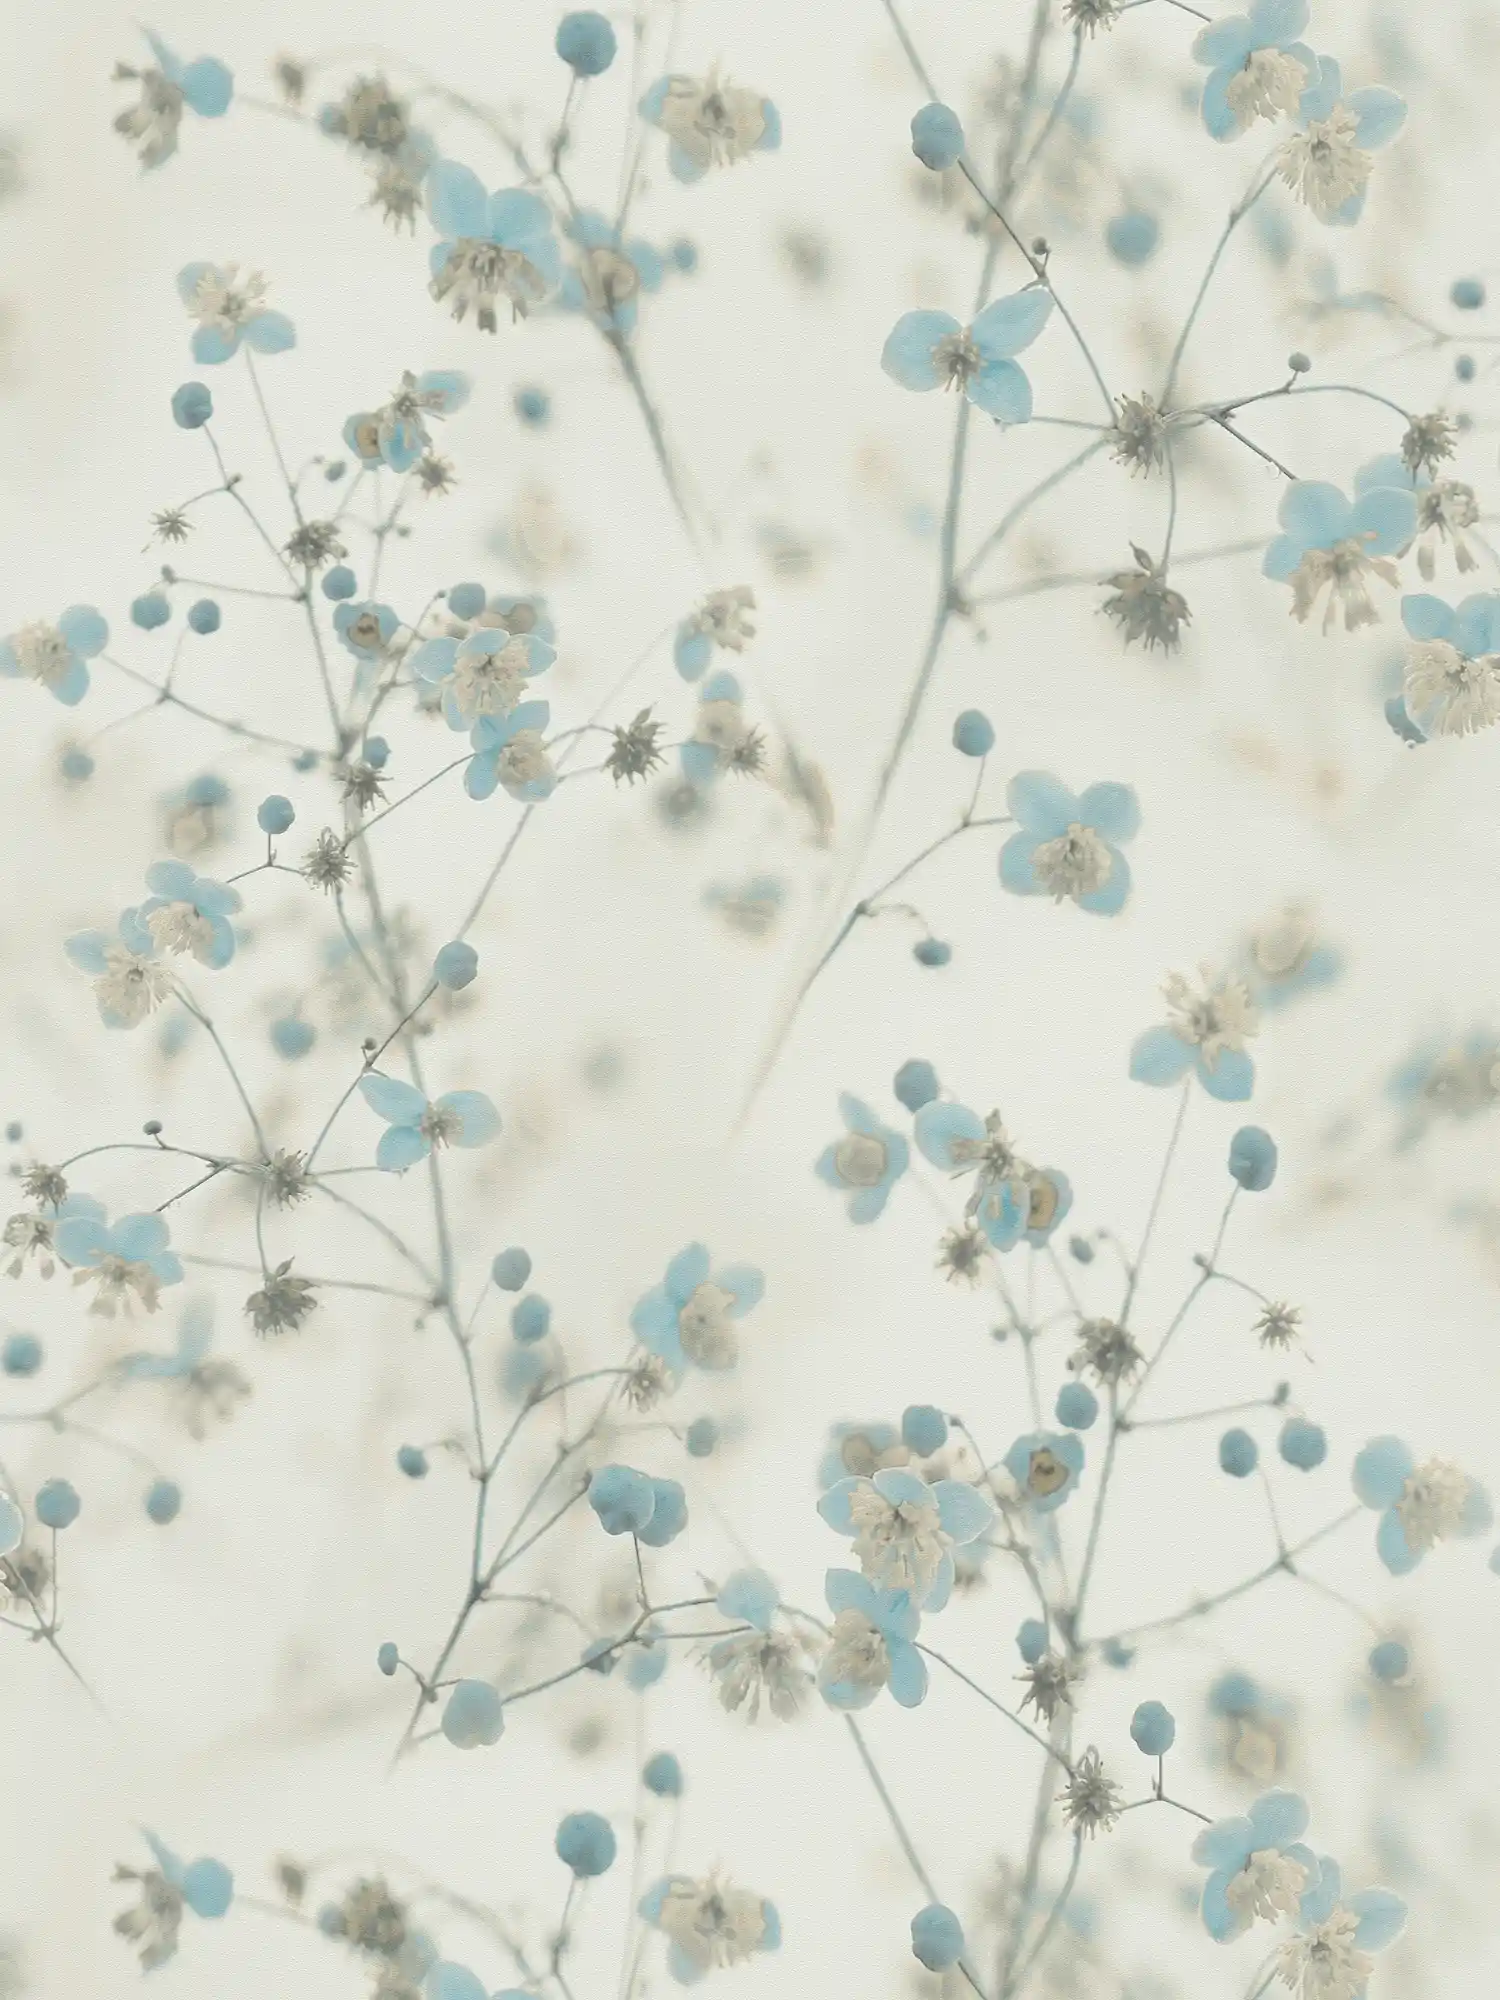 Romantisch Bloemenbehang Fotocollage Stijl - Grijs, Blauw
